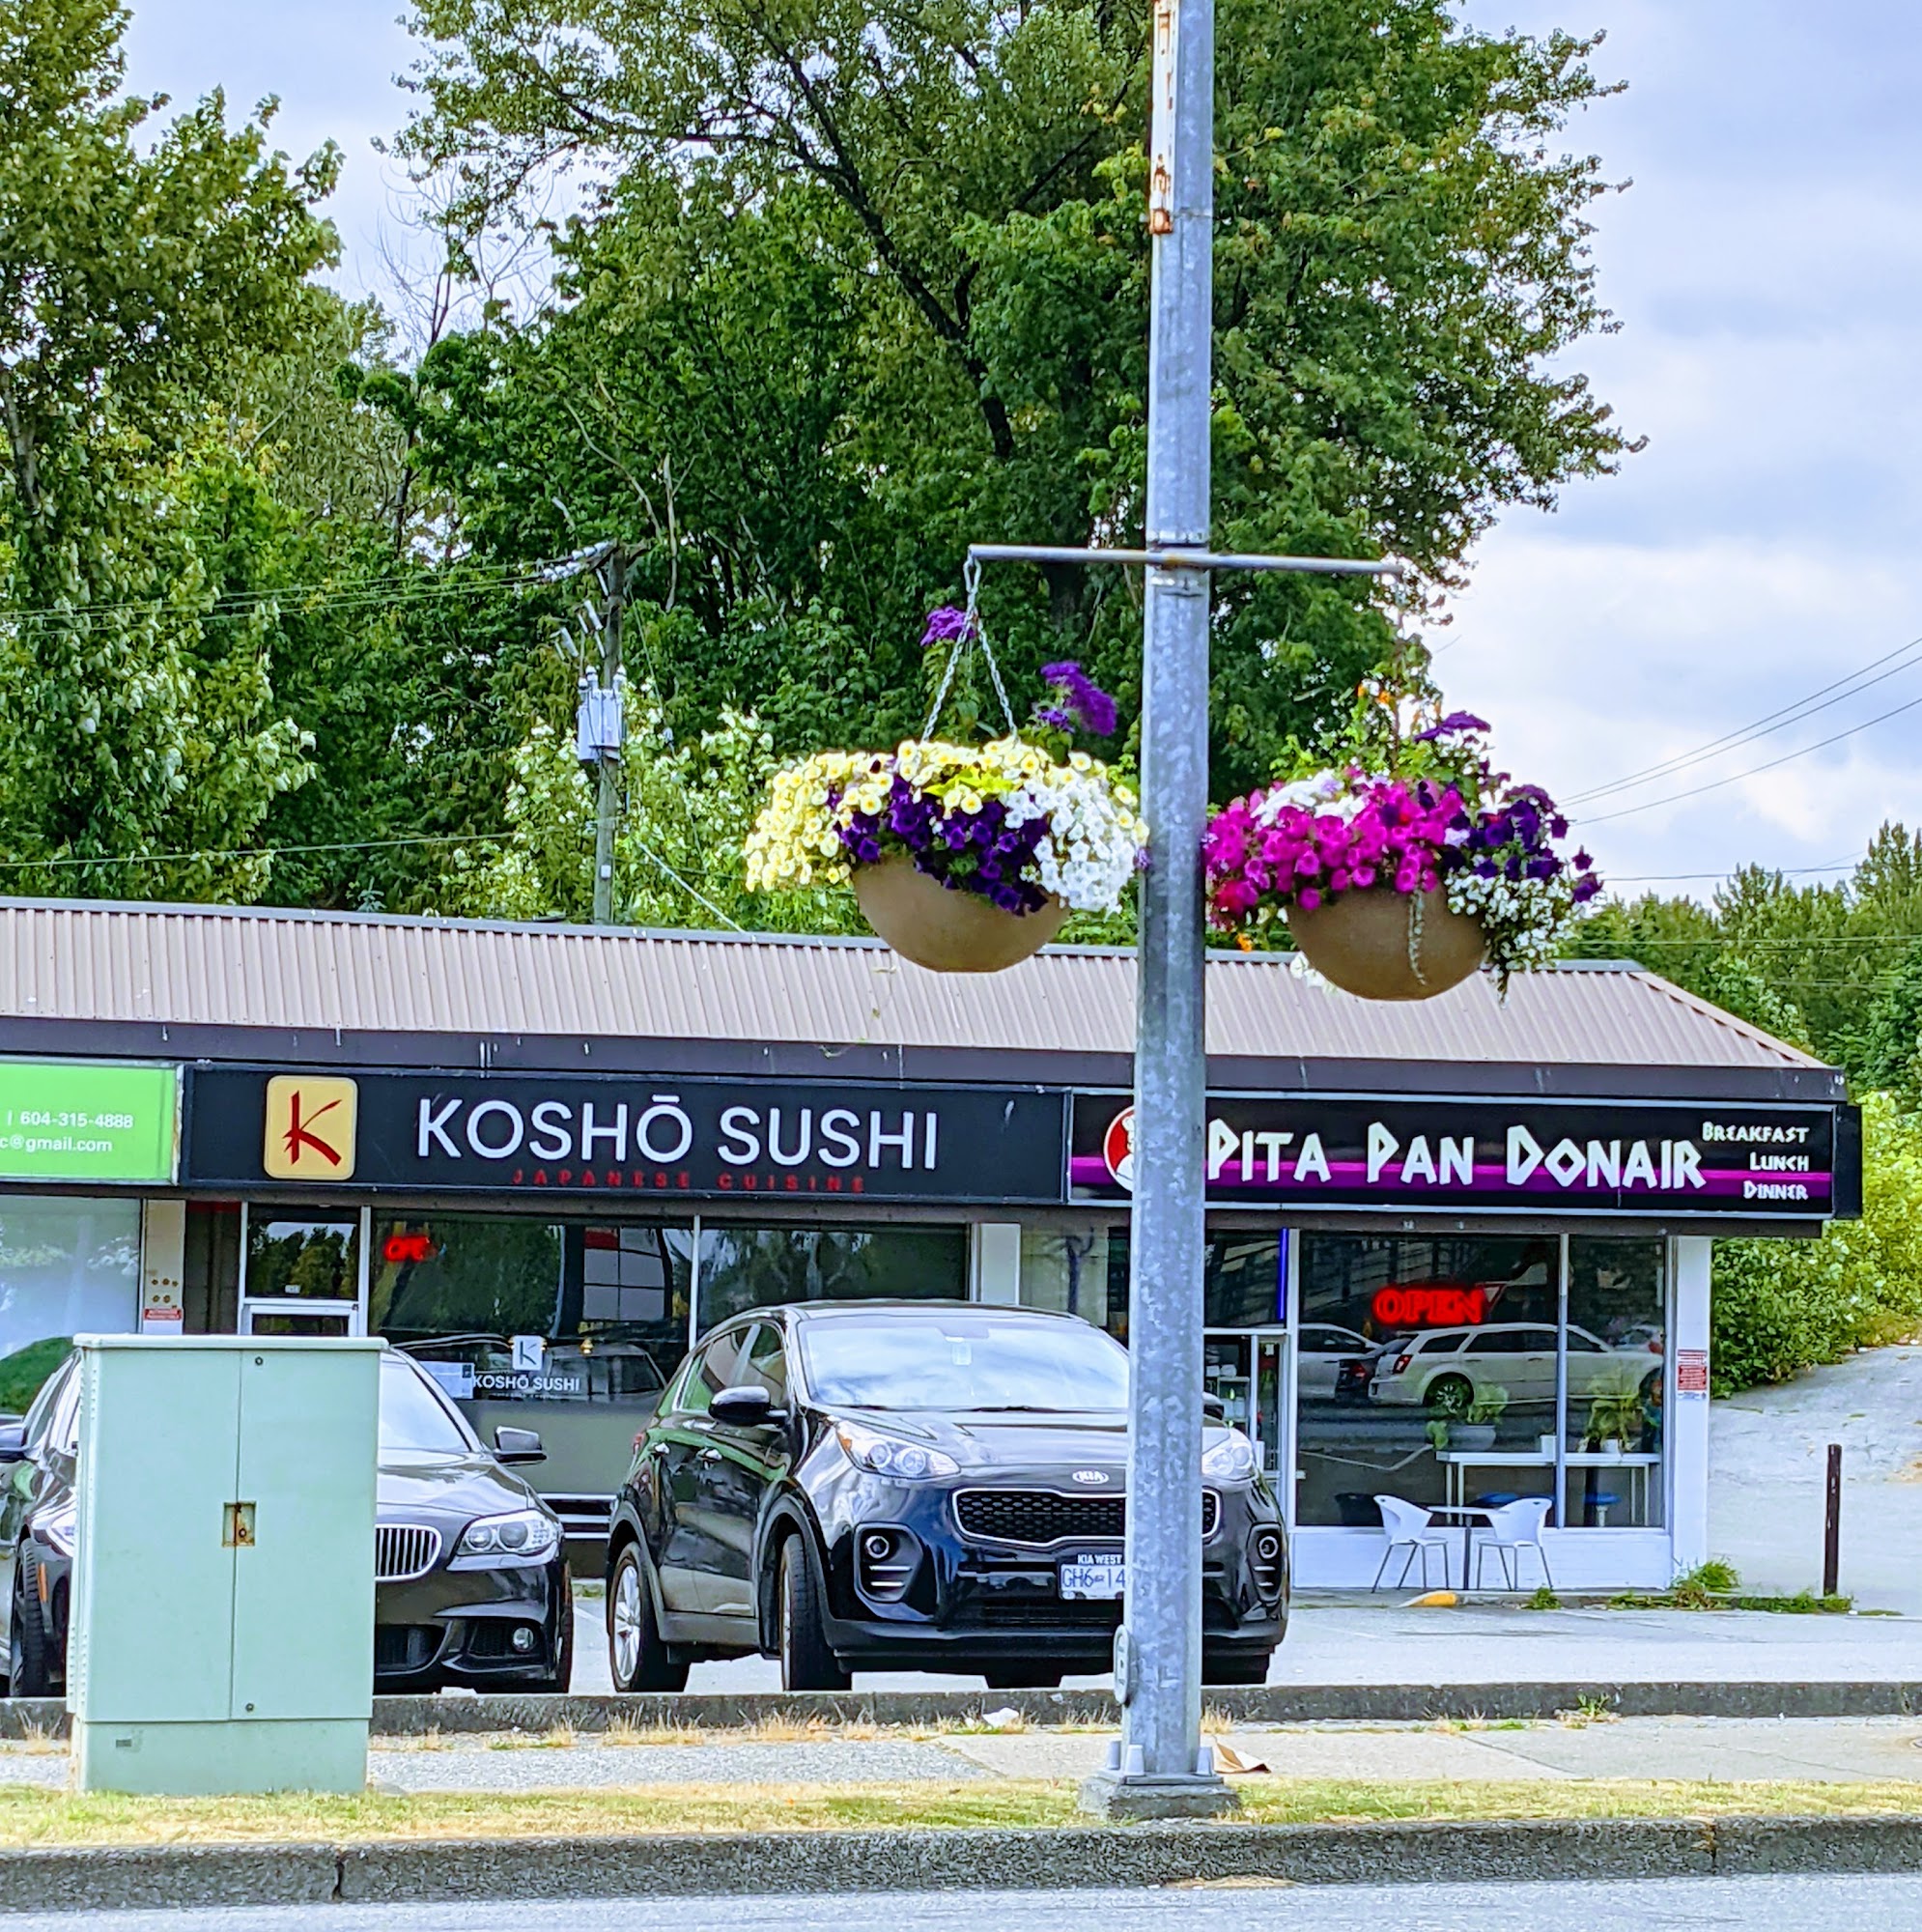 Koshō Sushi Japanese Restaurant 胡椒寿司